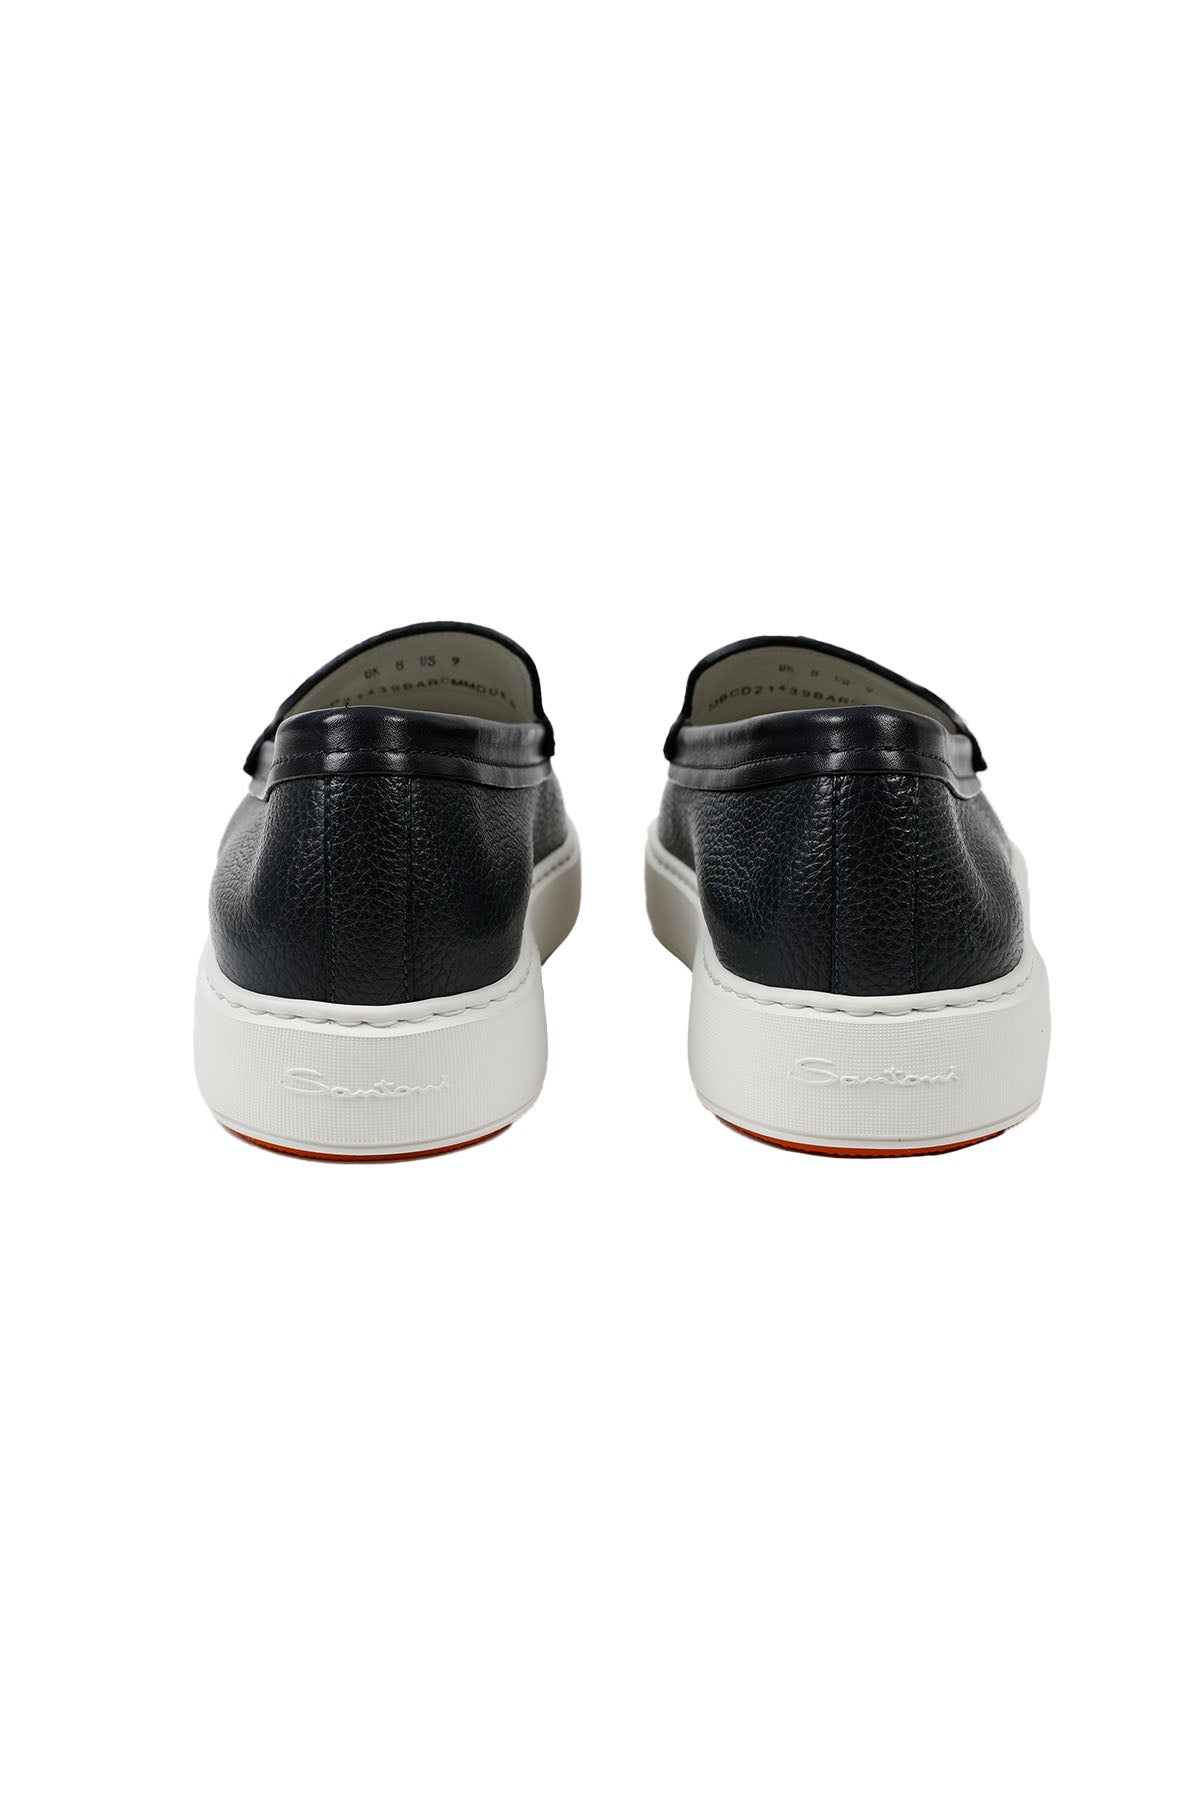 Santoni Püsküllü Deri Loafer Ayakkabı-Libas Trendy Fashion Store